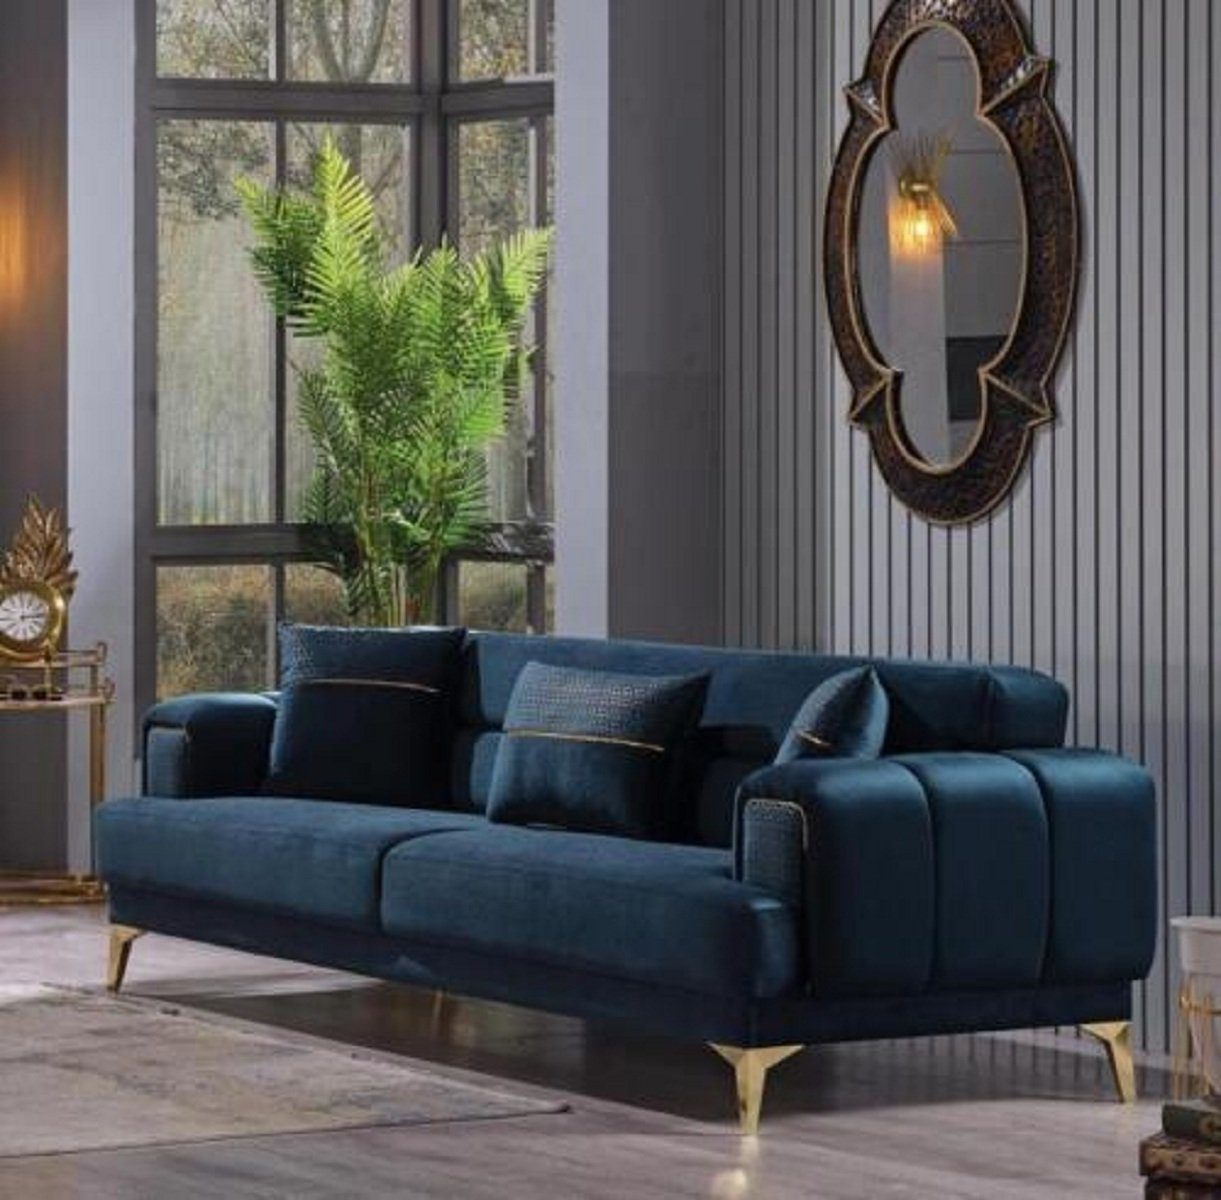 Blauer 1 Textilsofas, Made in 3-Sitzer Möbel Polster Teile, Luxus JVmoebel 3-Sitzer Europa Couch Wohnzimmermöbel